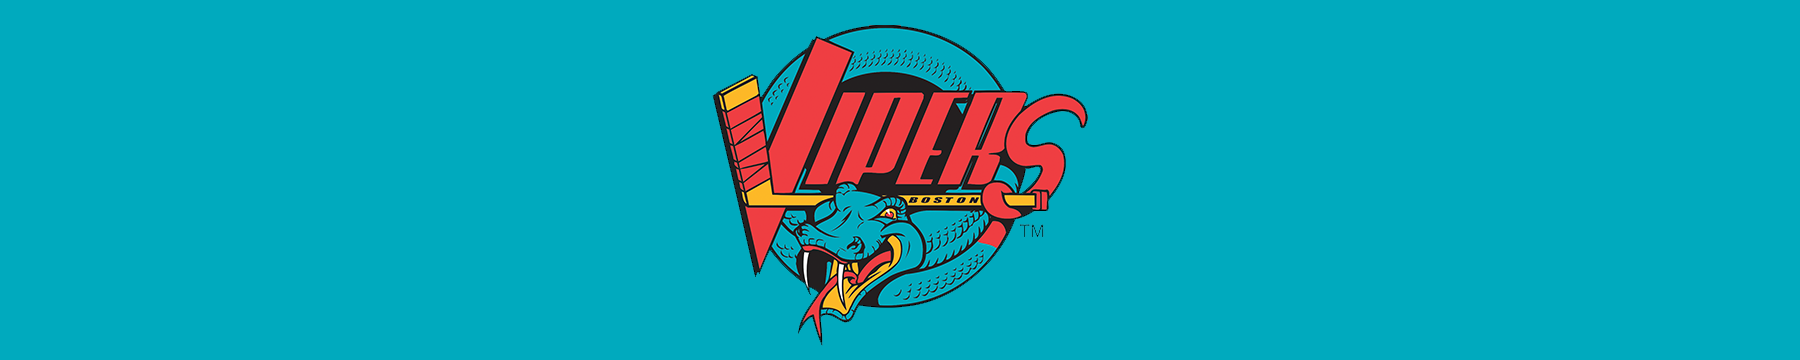 Vipers Hockey